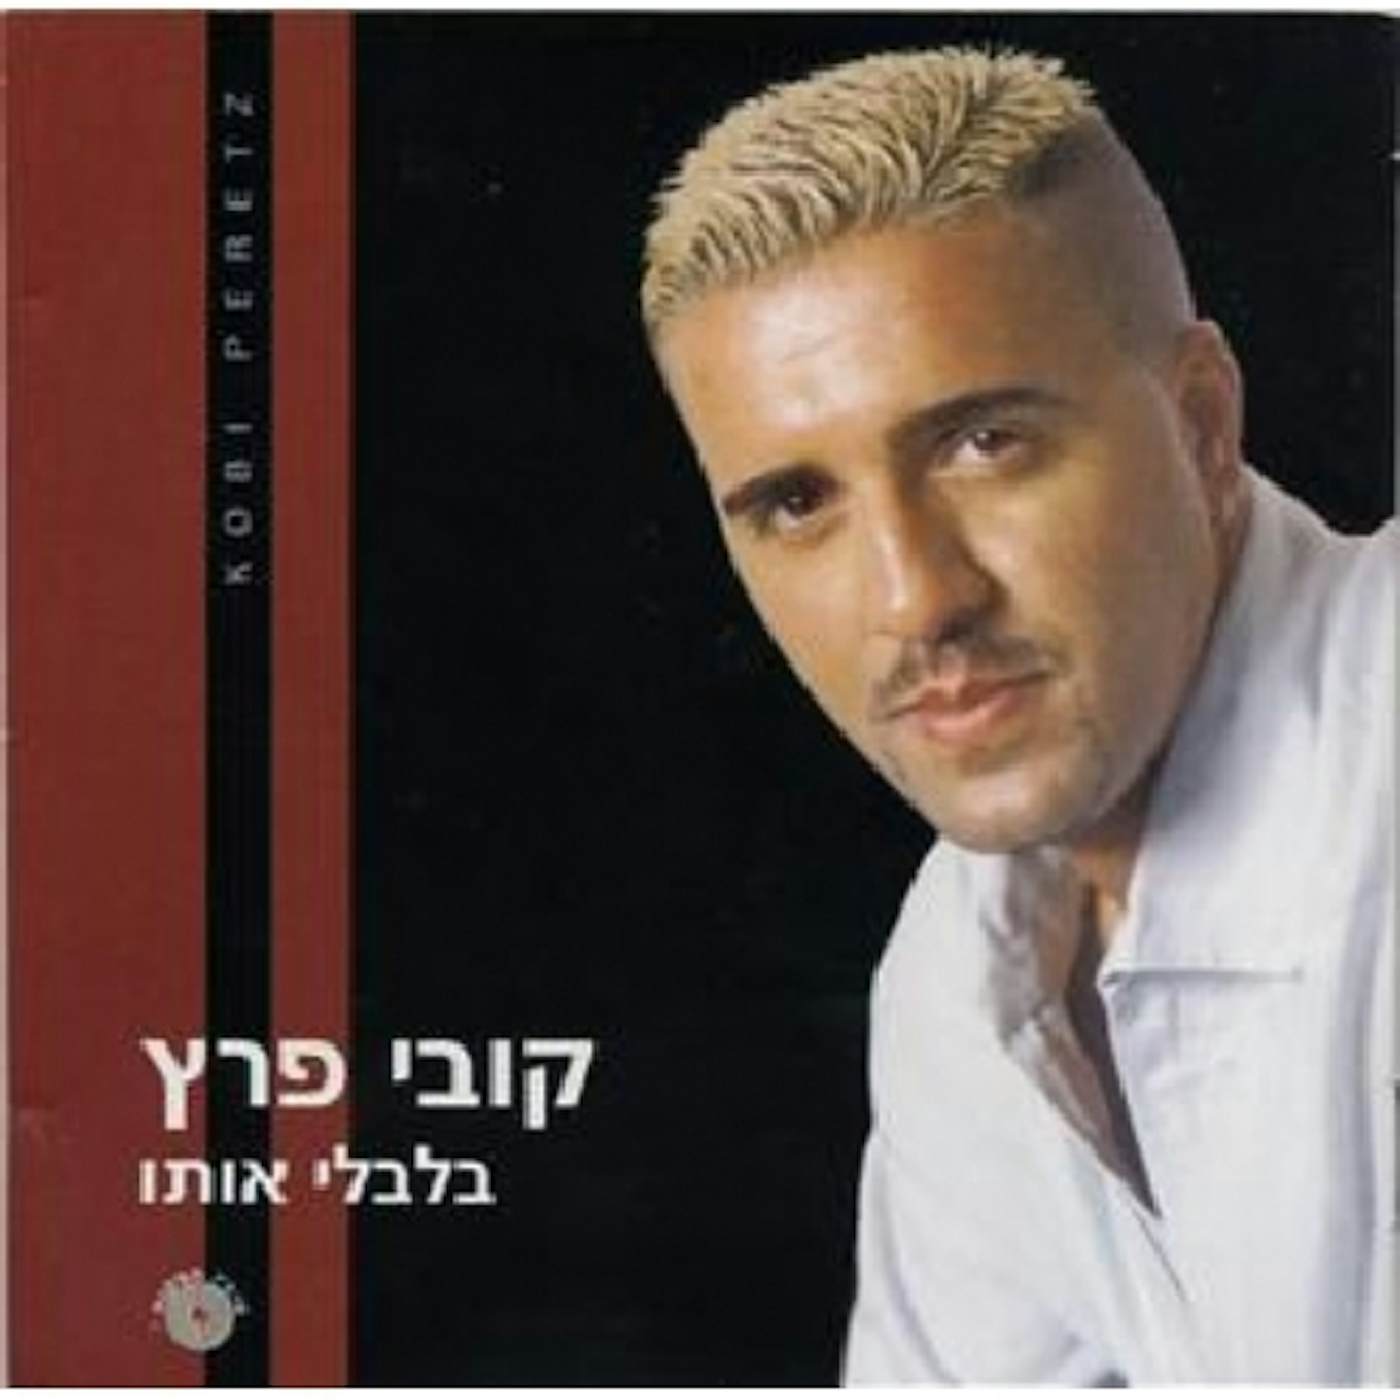 Kobi Peretz MYSTIFY HIM CD